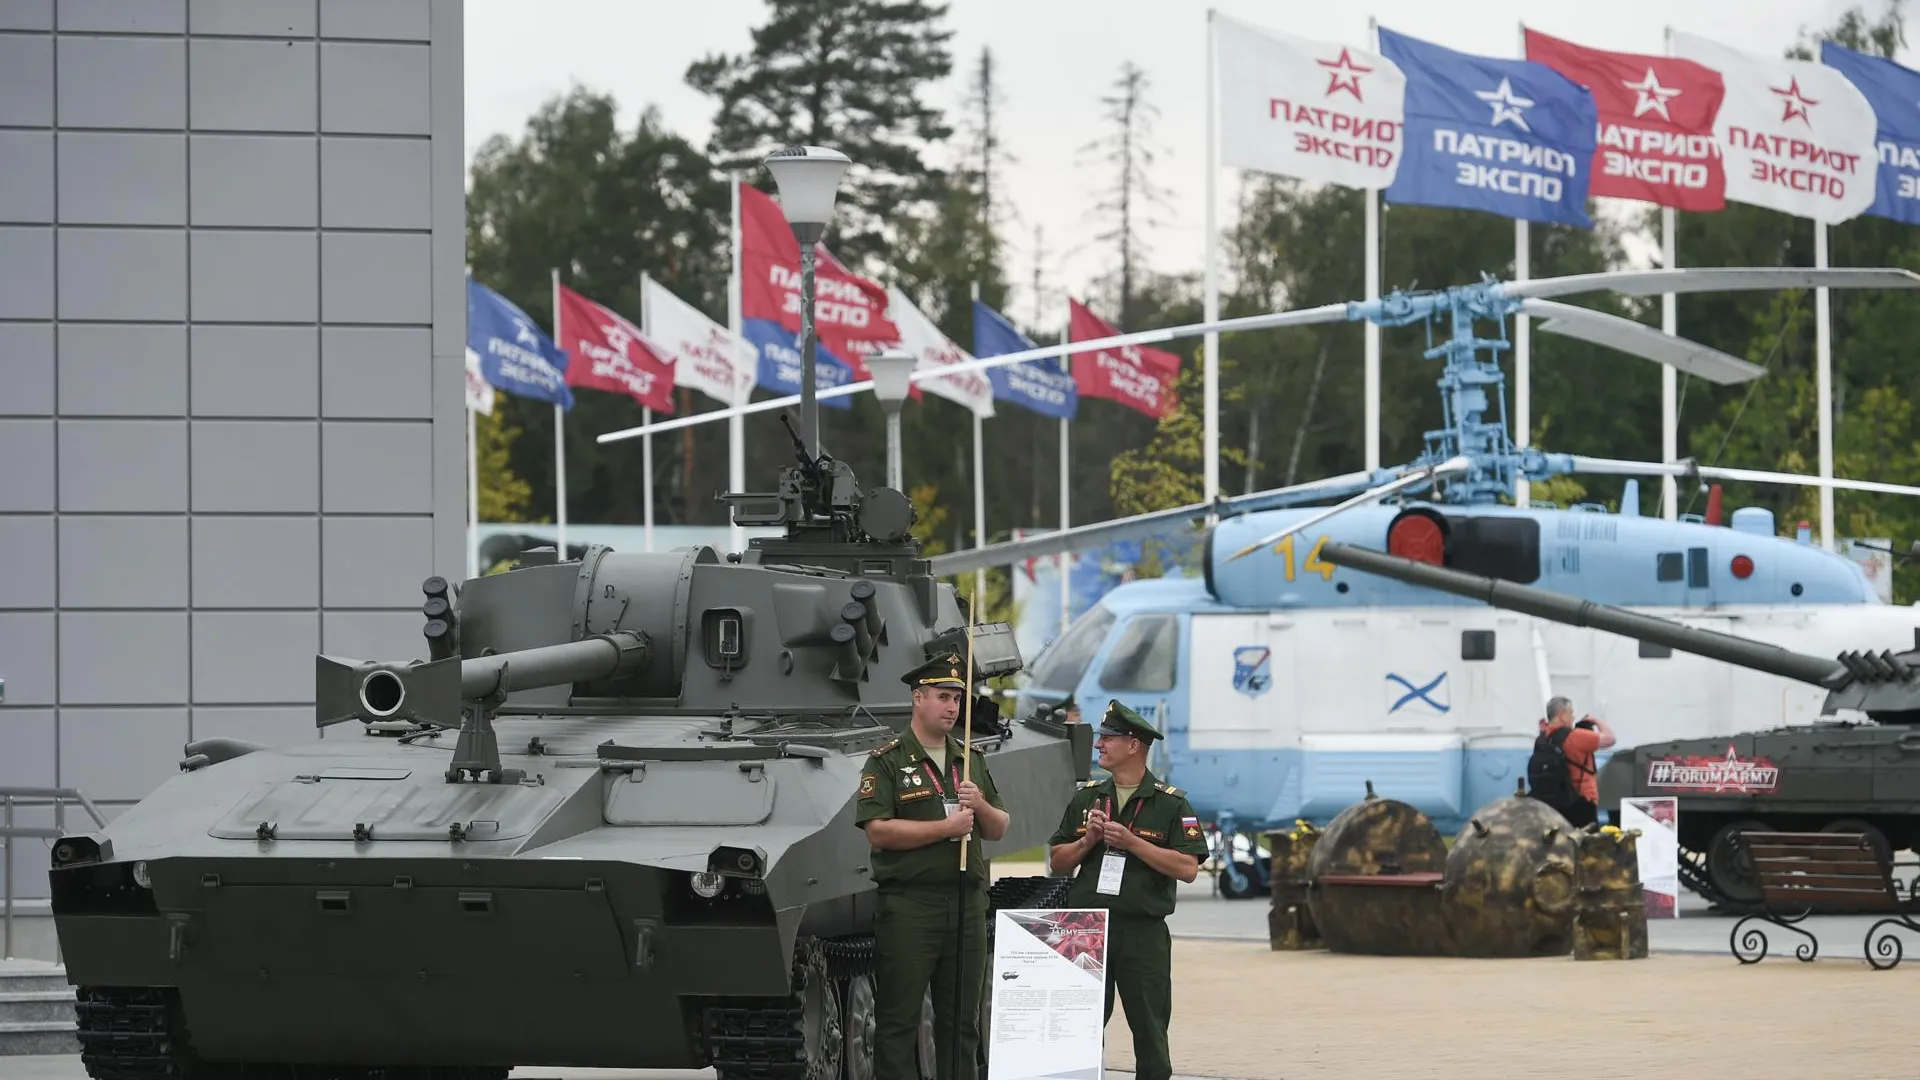 Предприятие Подольска представило на форуме «Армия‑2018» маскировку для экипировки солдат